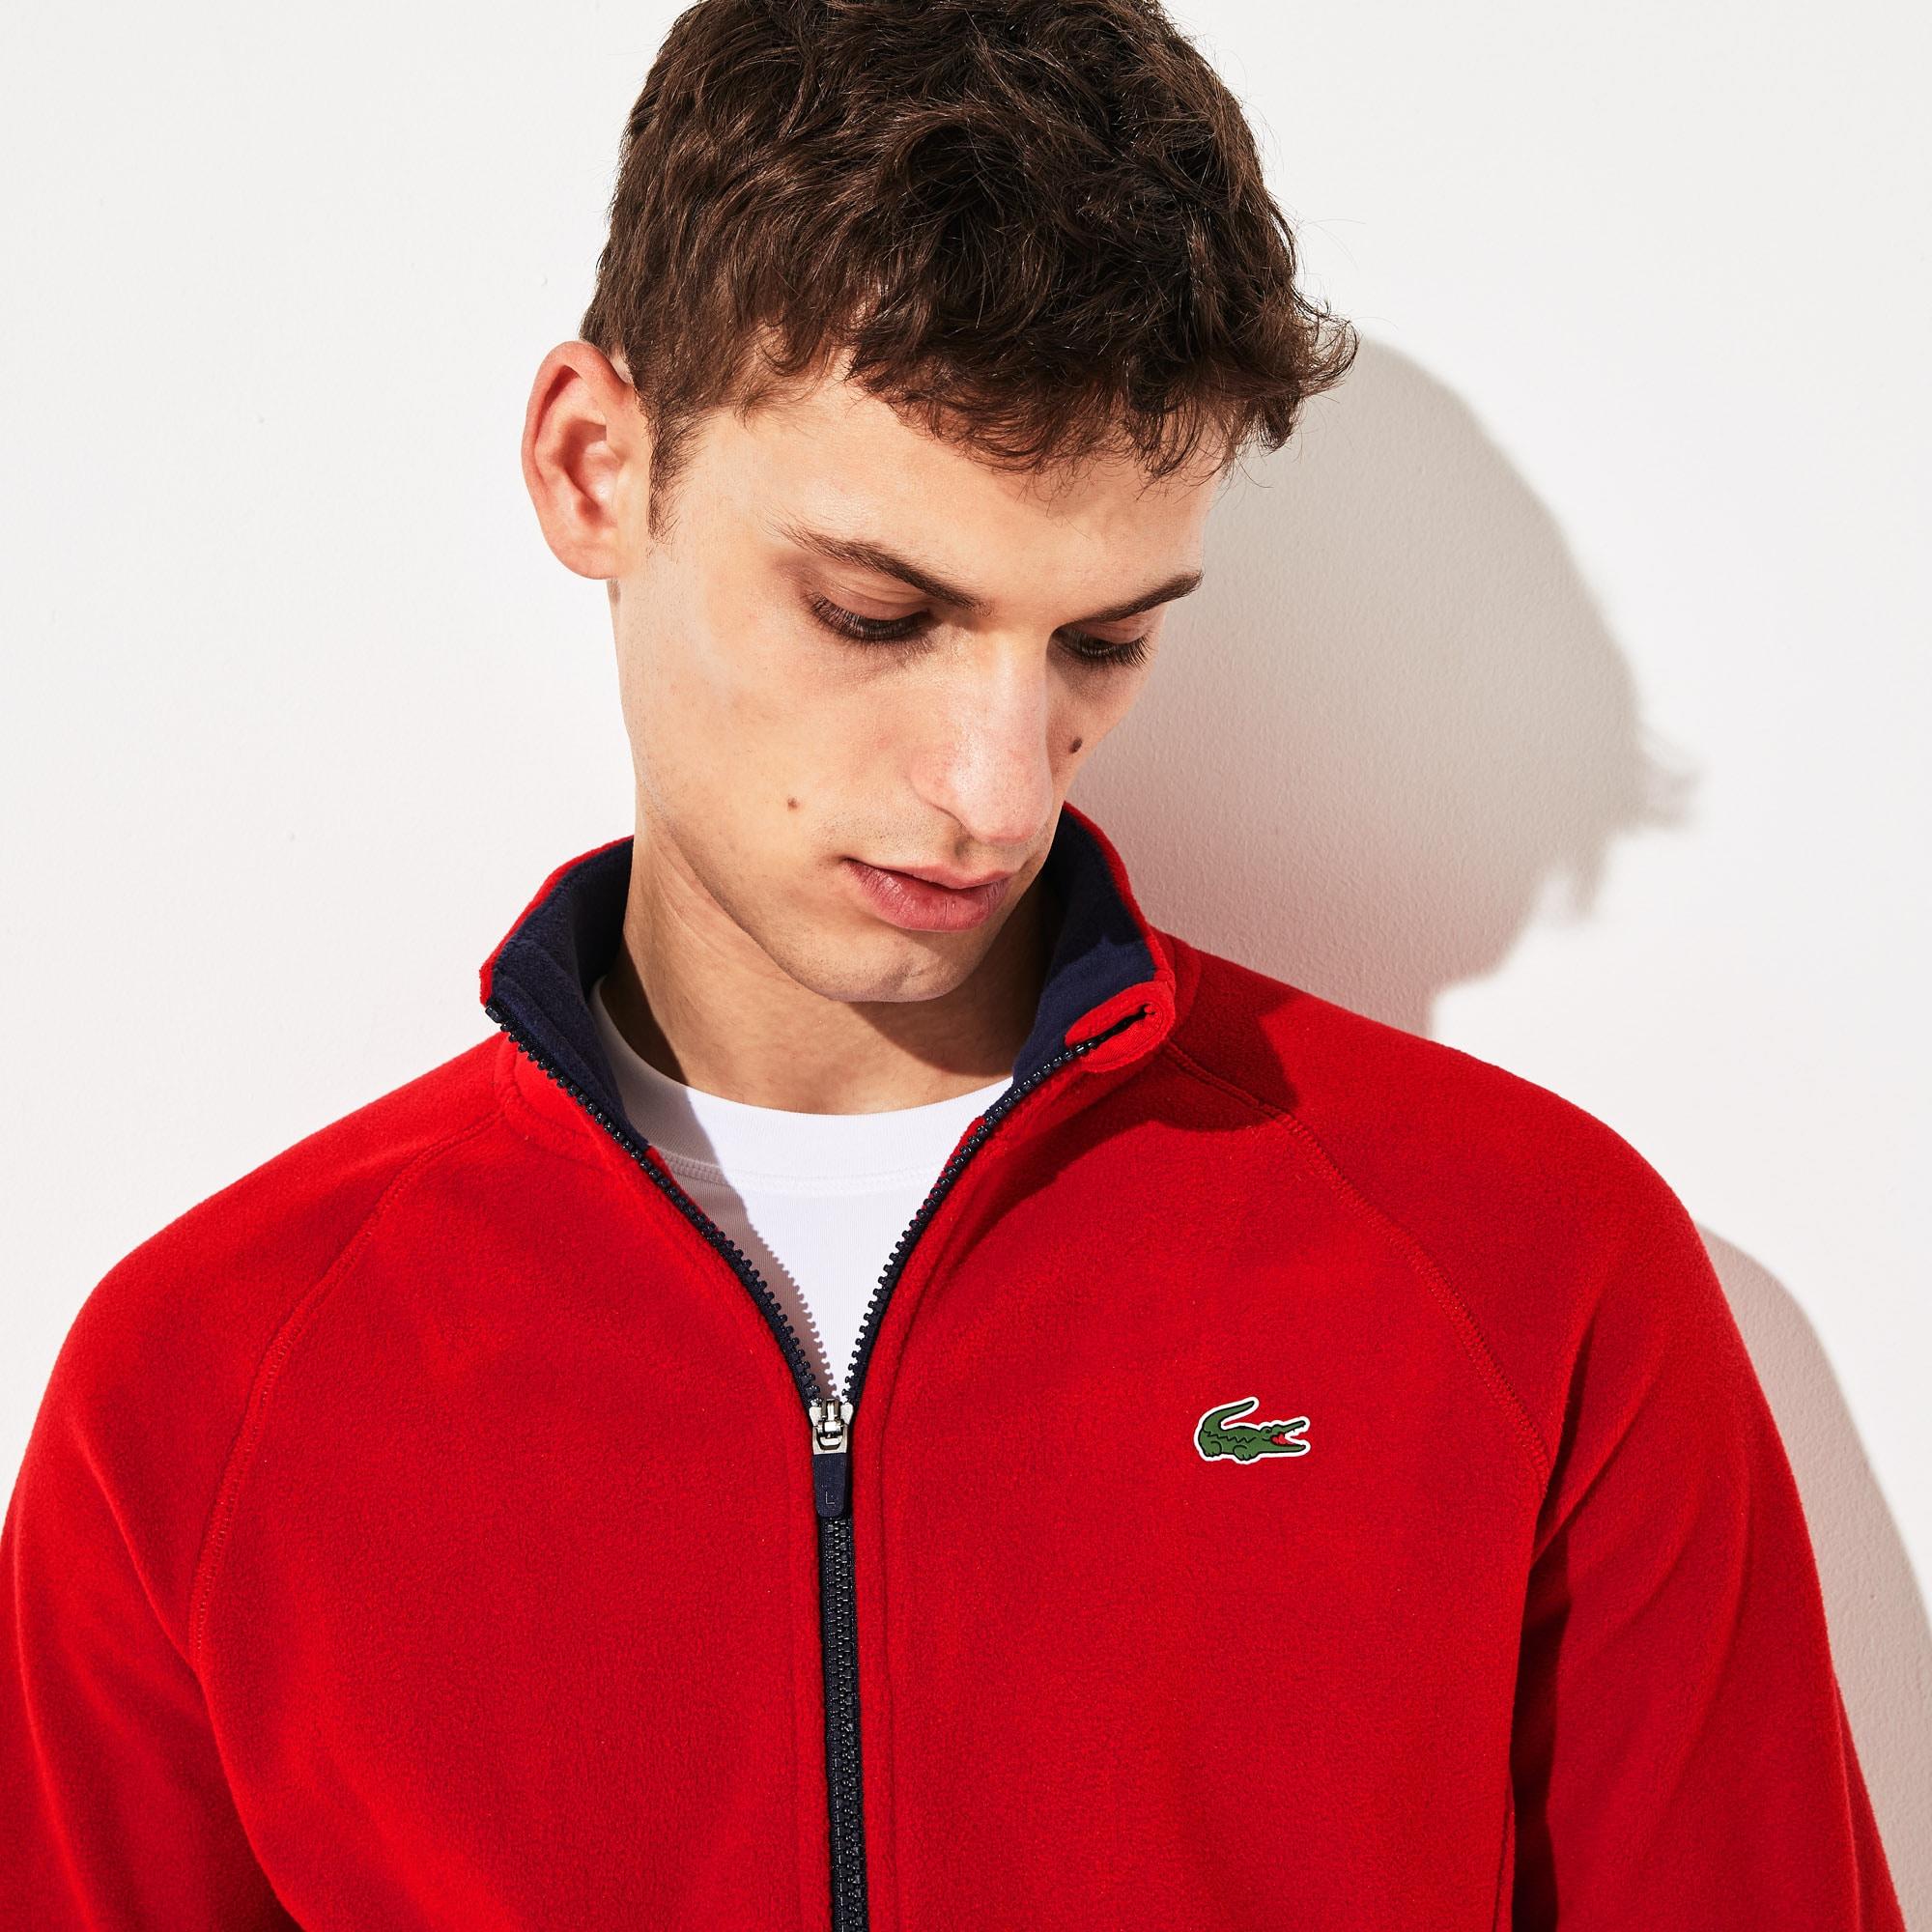 Lacoste Sport Novak Djokovic Tech Fleece Jacket in Red,Navy Blue (Red ...